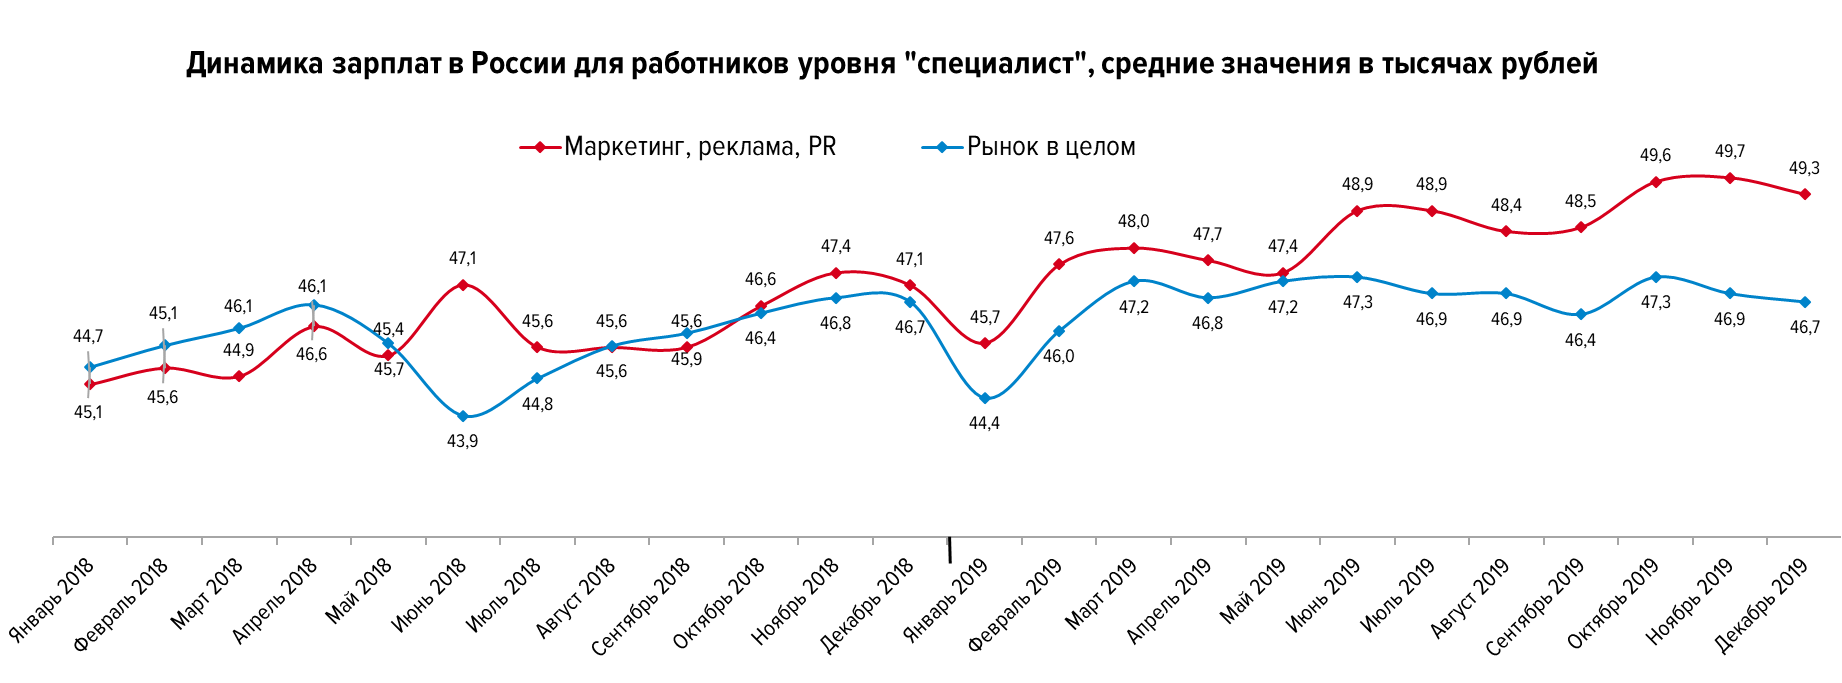 Какие зарплаты предлагают диджитал-специалистам в России - динамика для работников уровня "специалист"